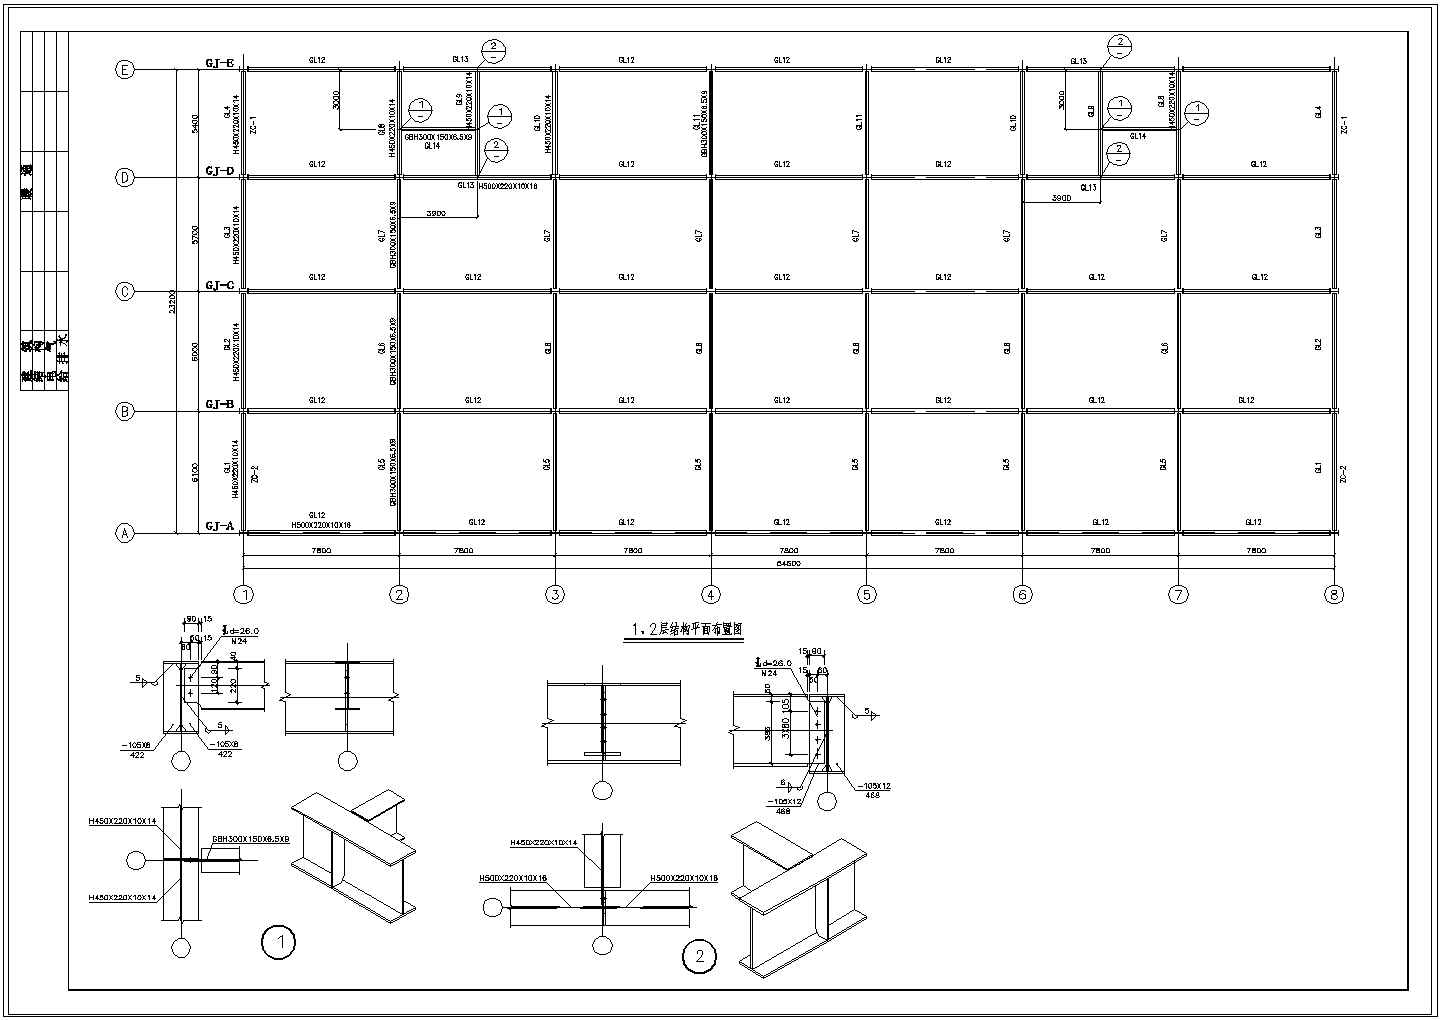 三层商业商场钢框架施工图 节点详细